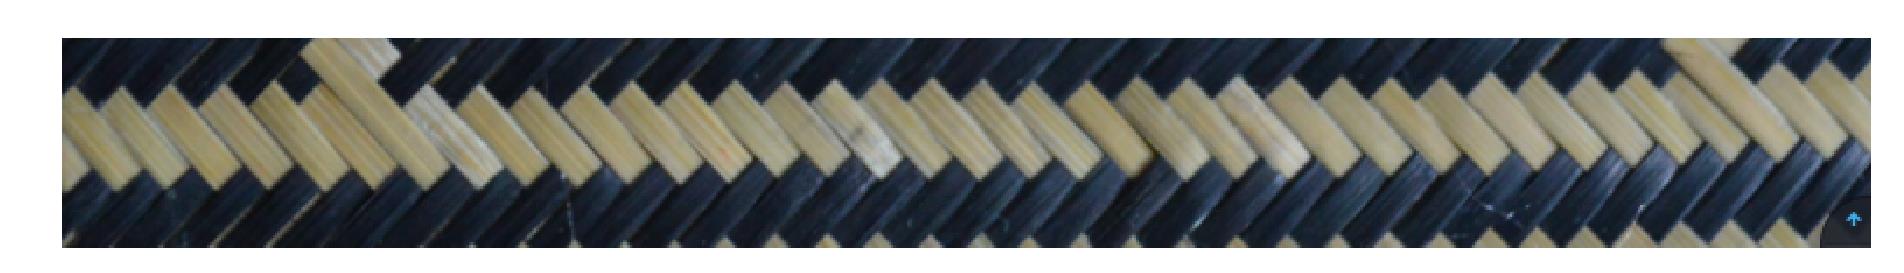 二、平面竹编收边人字路纹编织技法